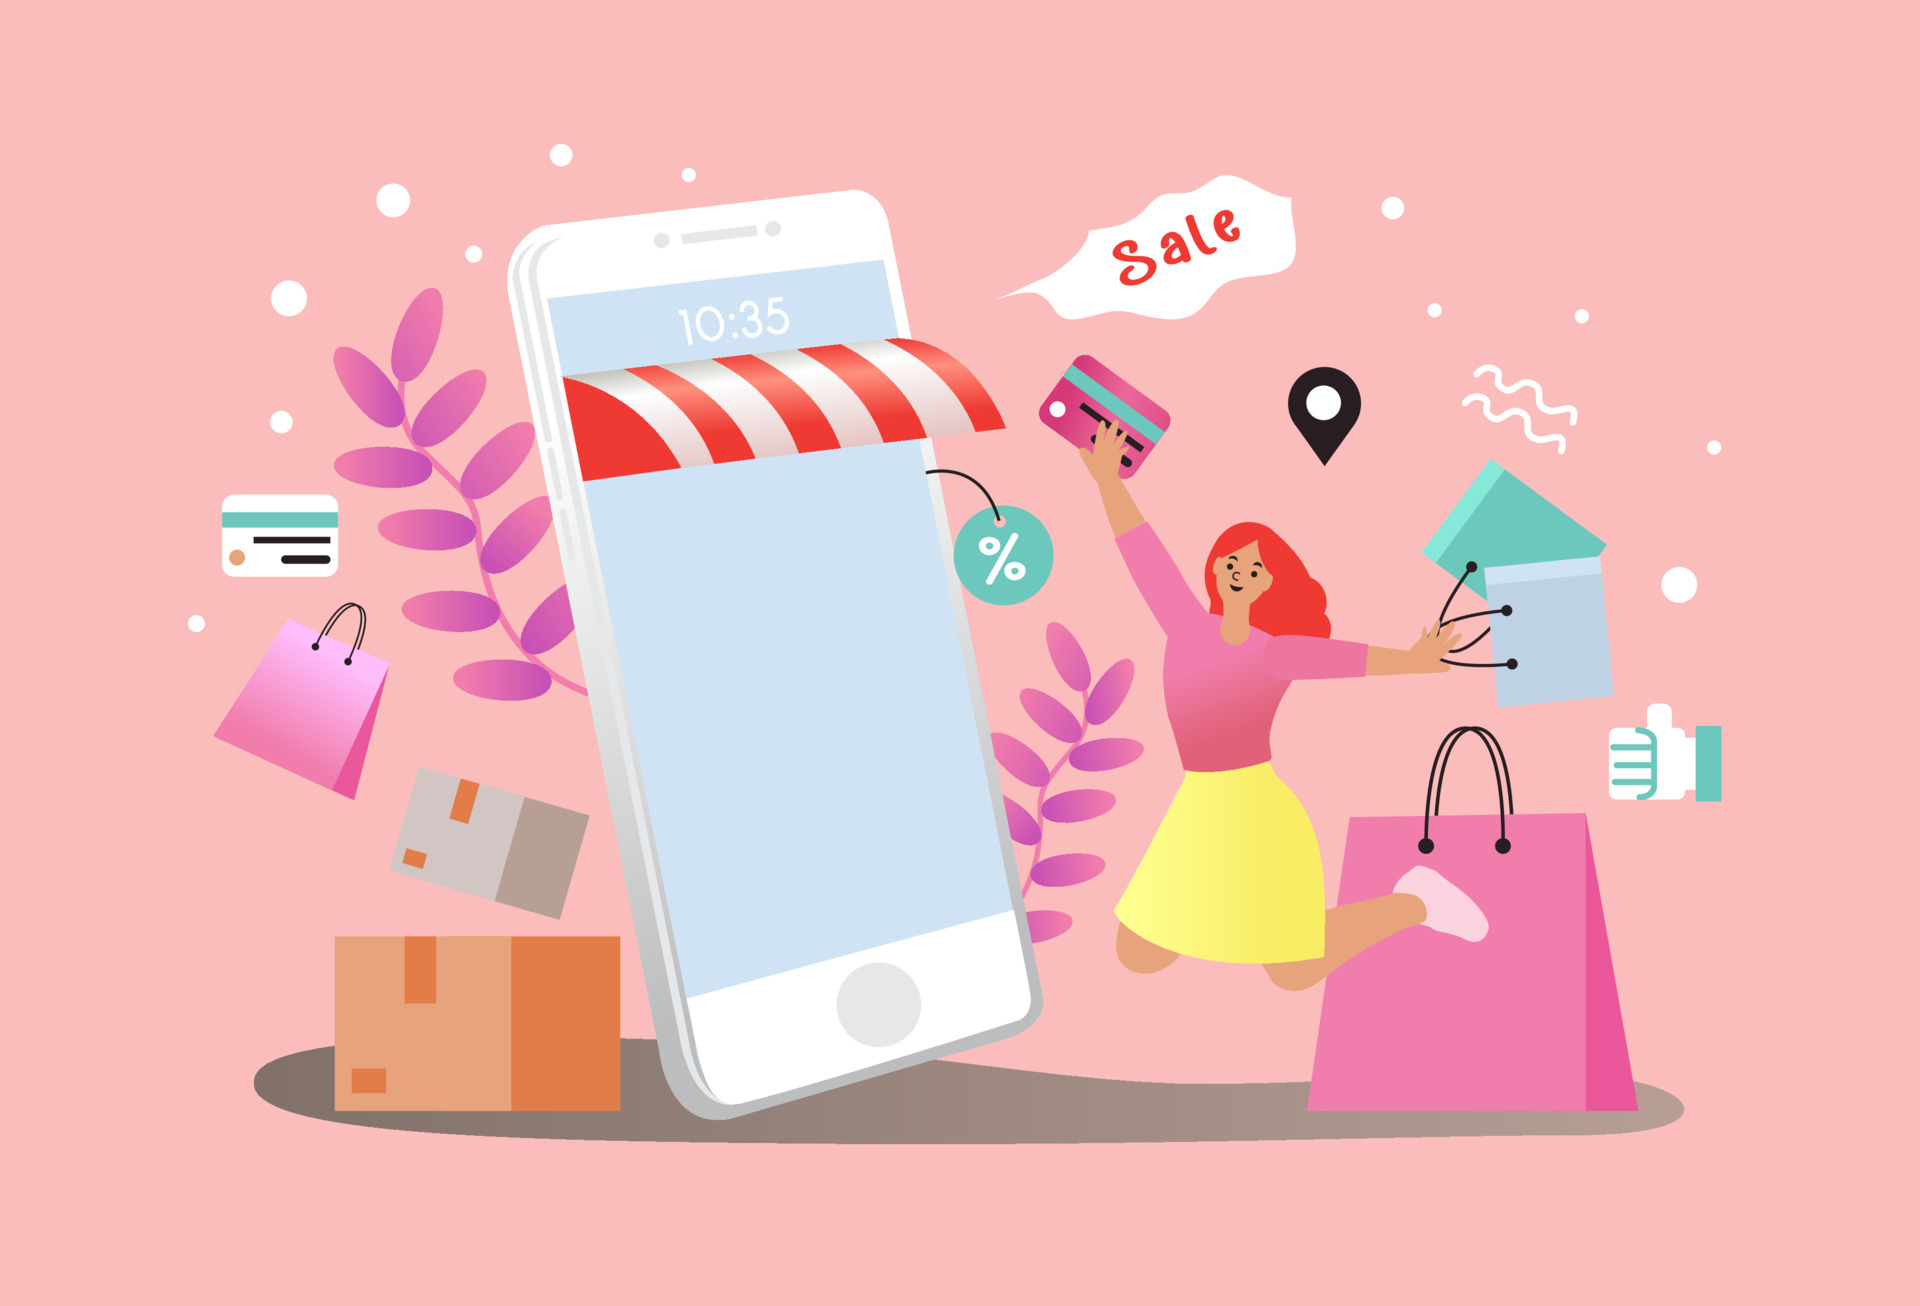 Mua sắm trực tuyến là một công nghệ thời đại mới giúp cho việc mua sắm của bạn dễ dàng và tiện lợi hơn bao giờ hết. Hãy đón xem hình ảnh liên quan đến mua sắm trực tuyến để khám phá những sản phẩm độc đáo và chất lượng nhất chỉ với vài thao tác đơn giản trên mạng. 